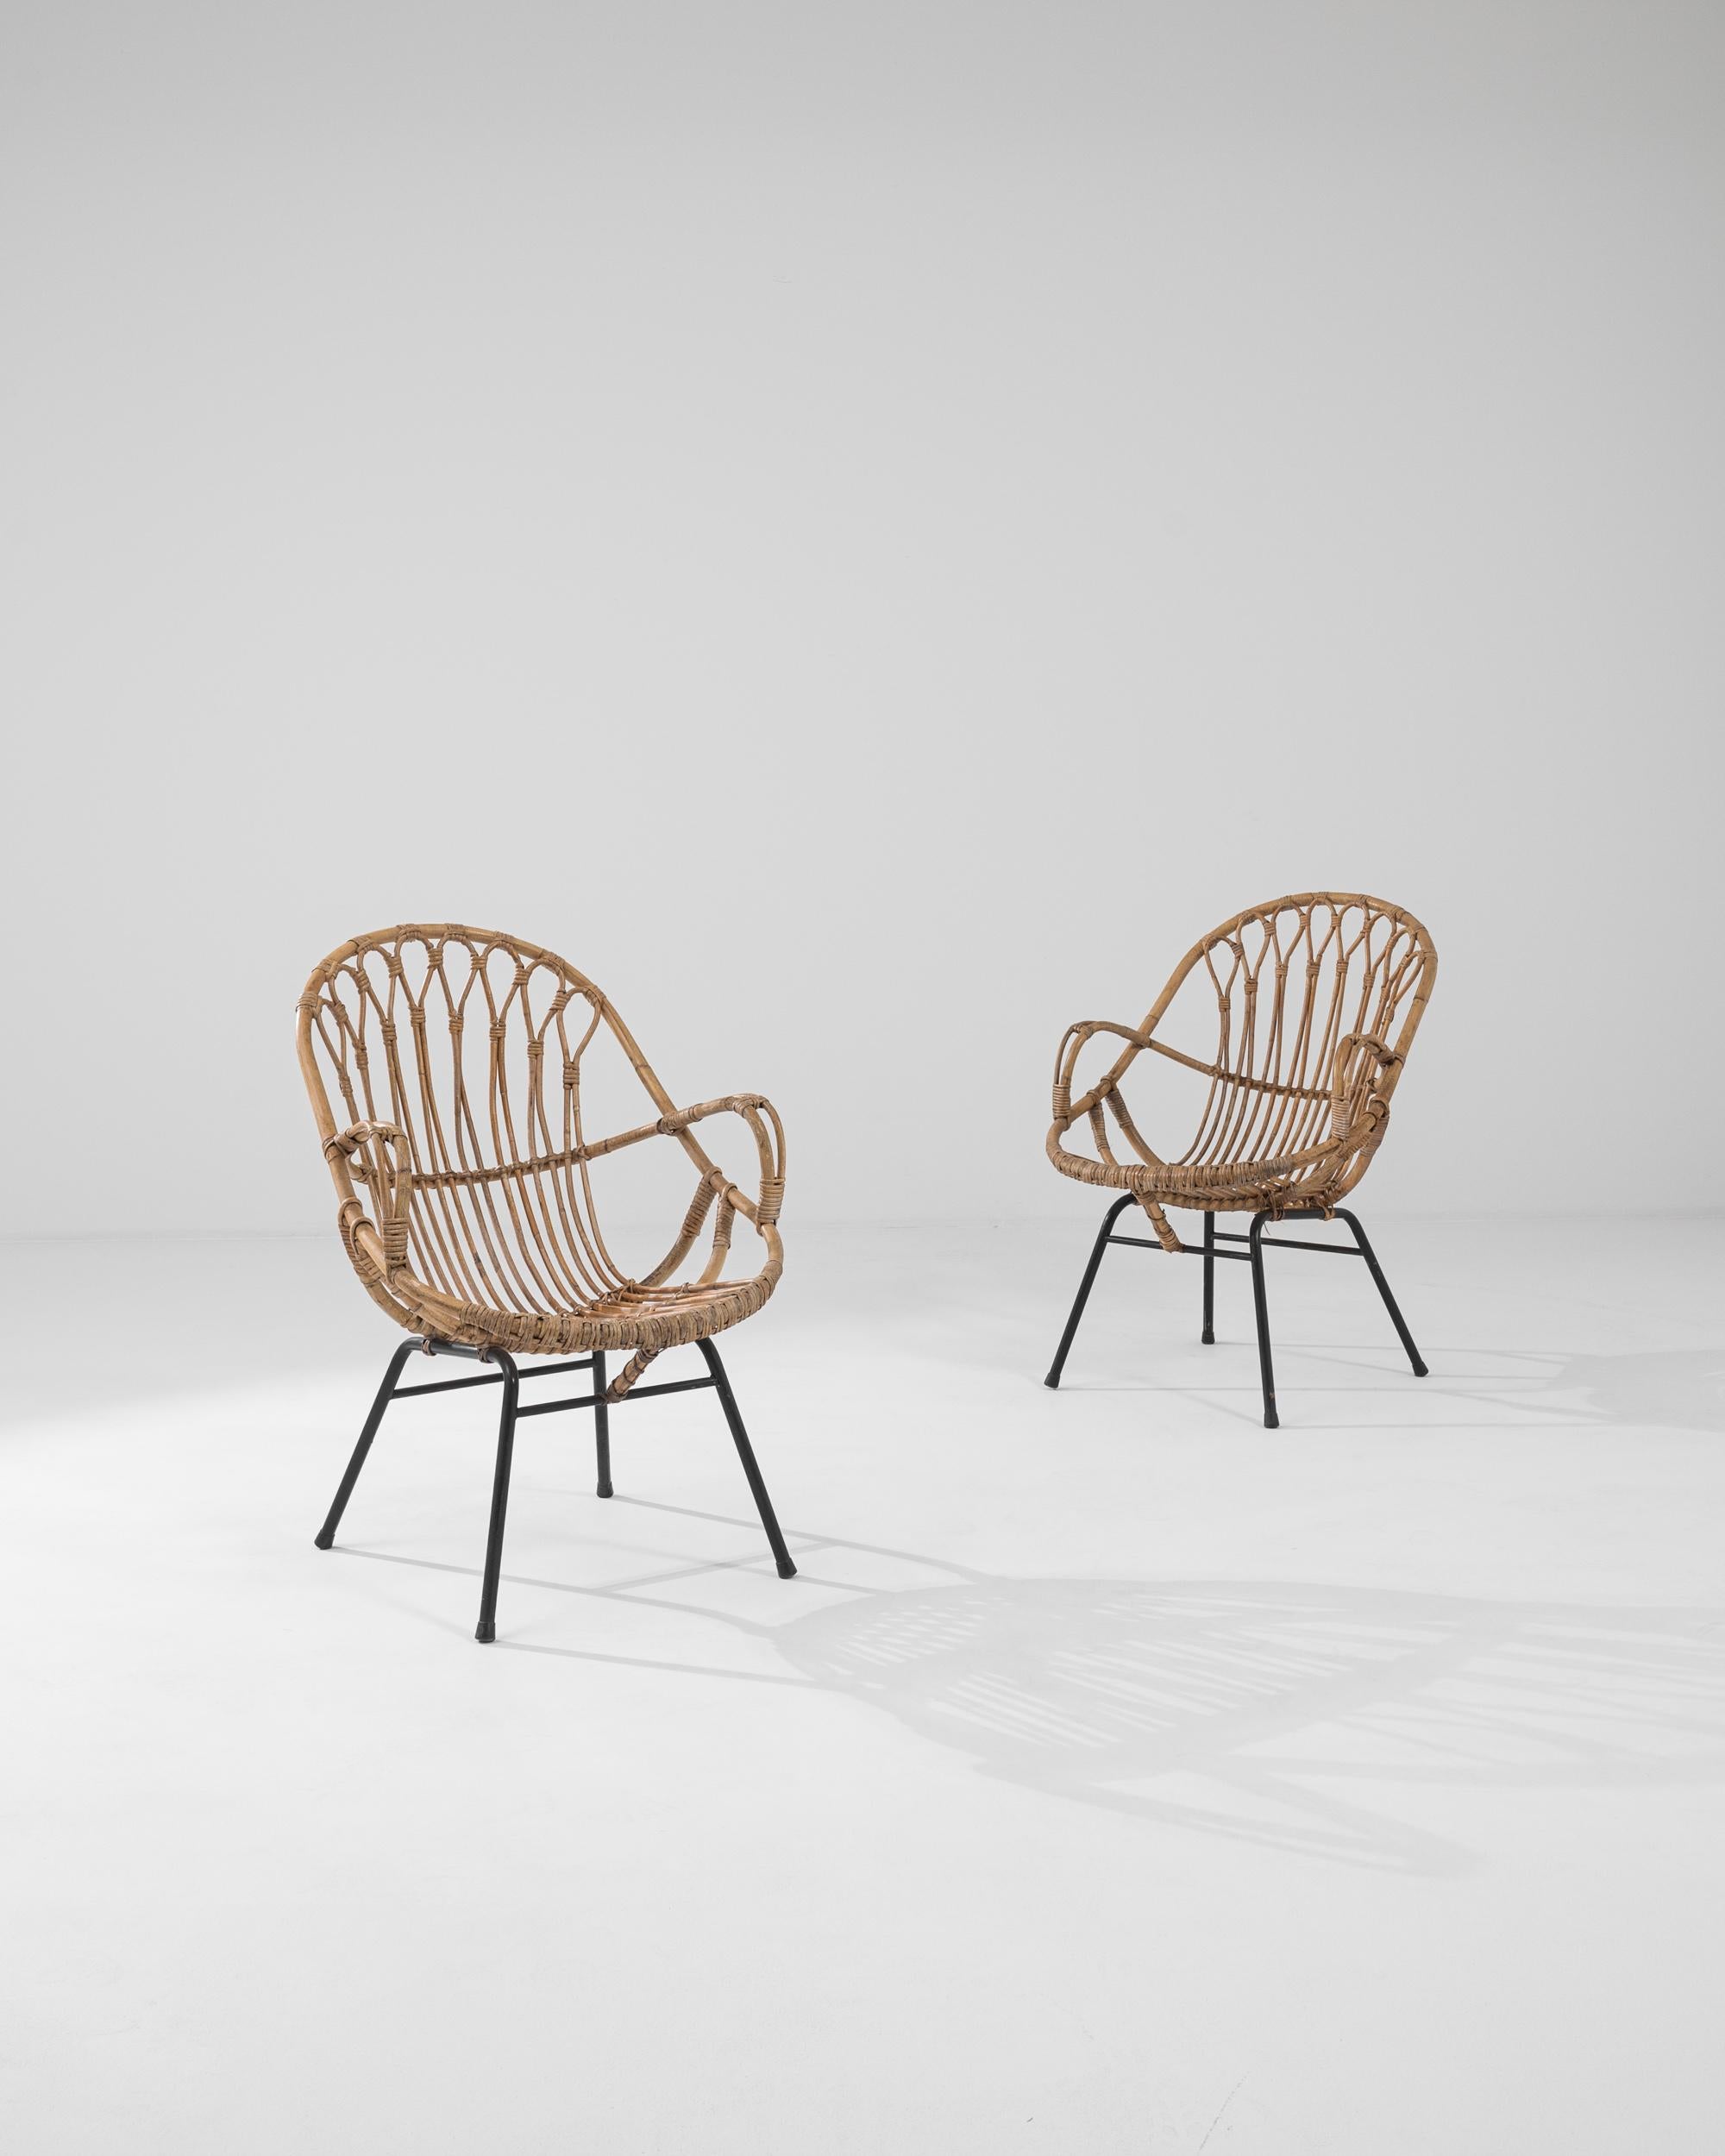 Ein Paar Sessel aus Frankreich, um 1960. Diese in Frankreich hergestellten Sessel sind eine verspielte Variante eines Klassikers aus der Mitte des Jahrhunderts. Aus zusammengeflochtenem Rattan haben Kunsthandwerker einen Stuhl gefertigt, der sowohl